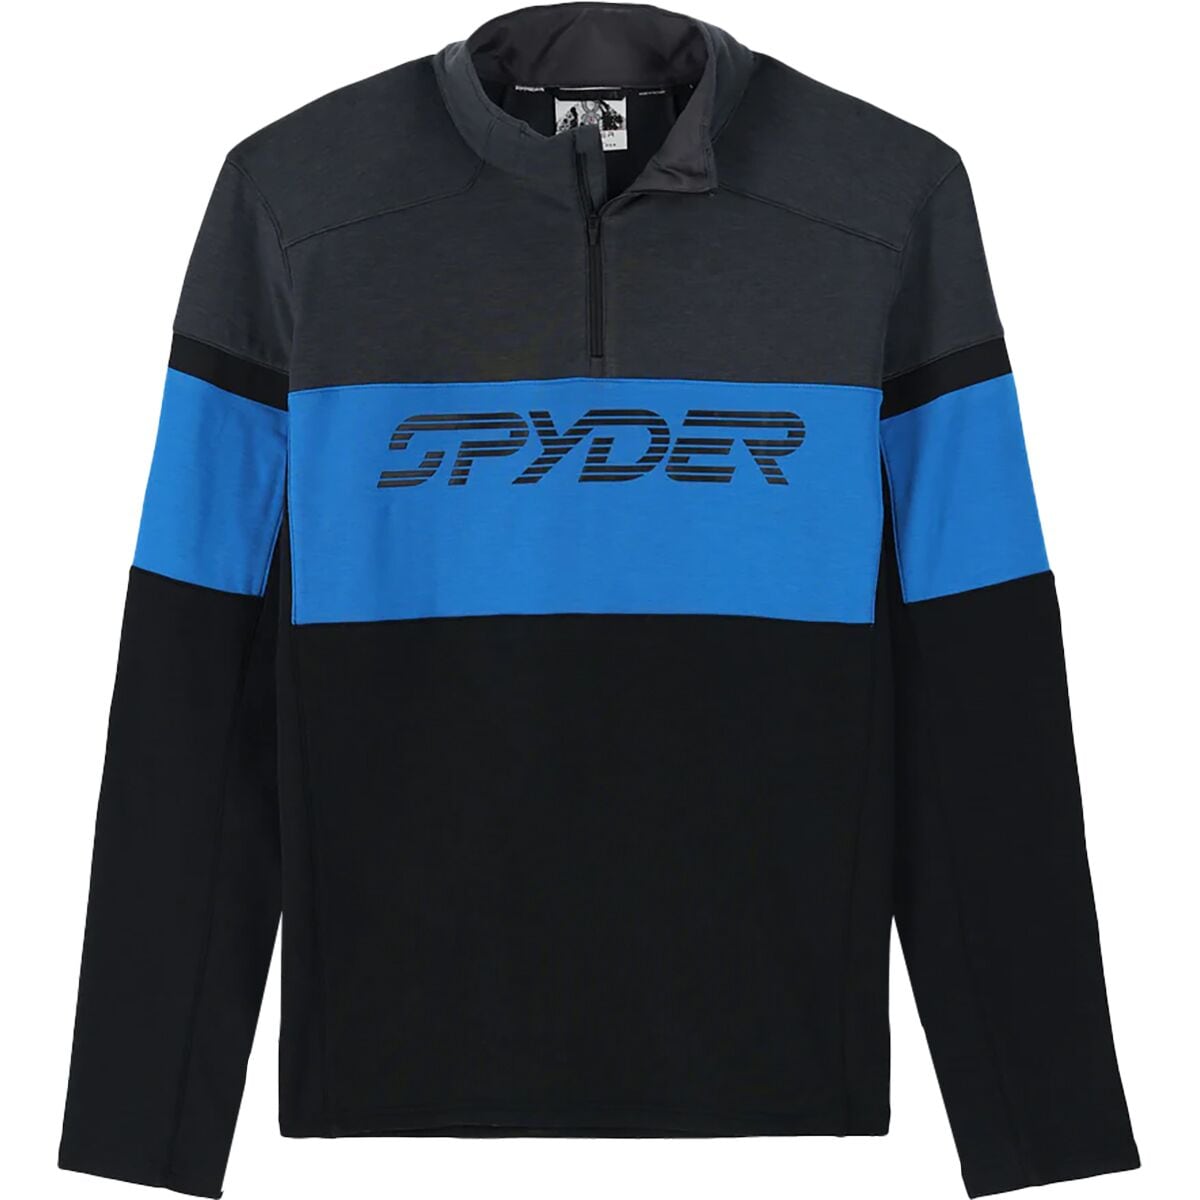 Spyder Speed 1/2-Zip Fleece Jacket - Men's